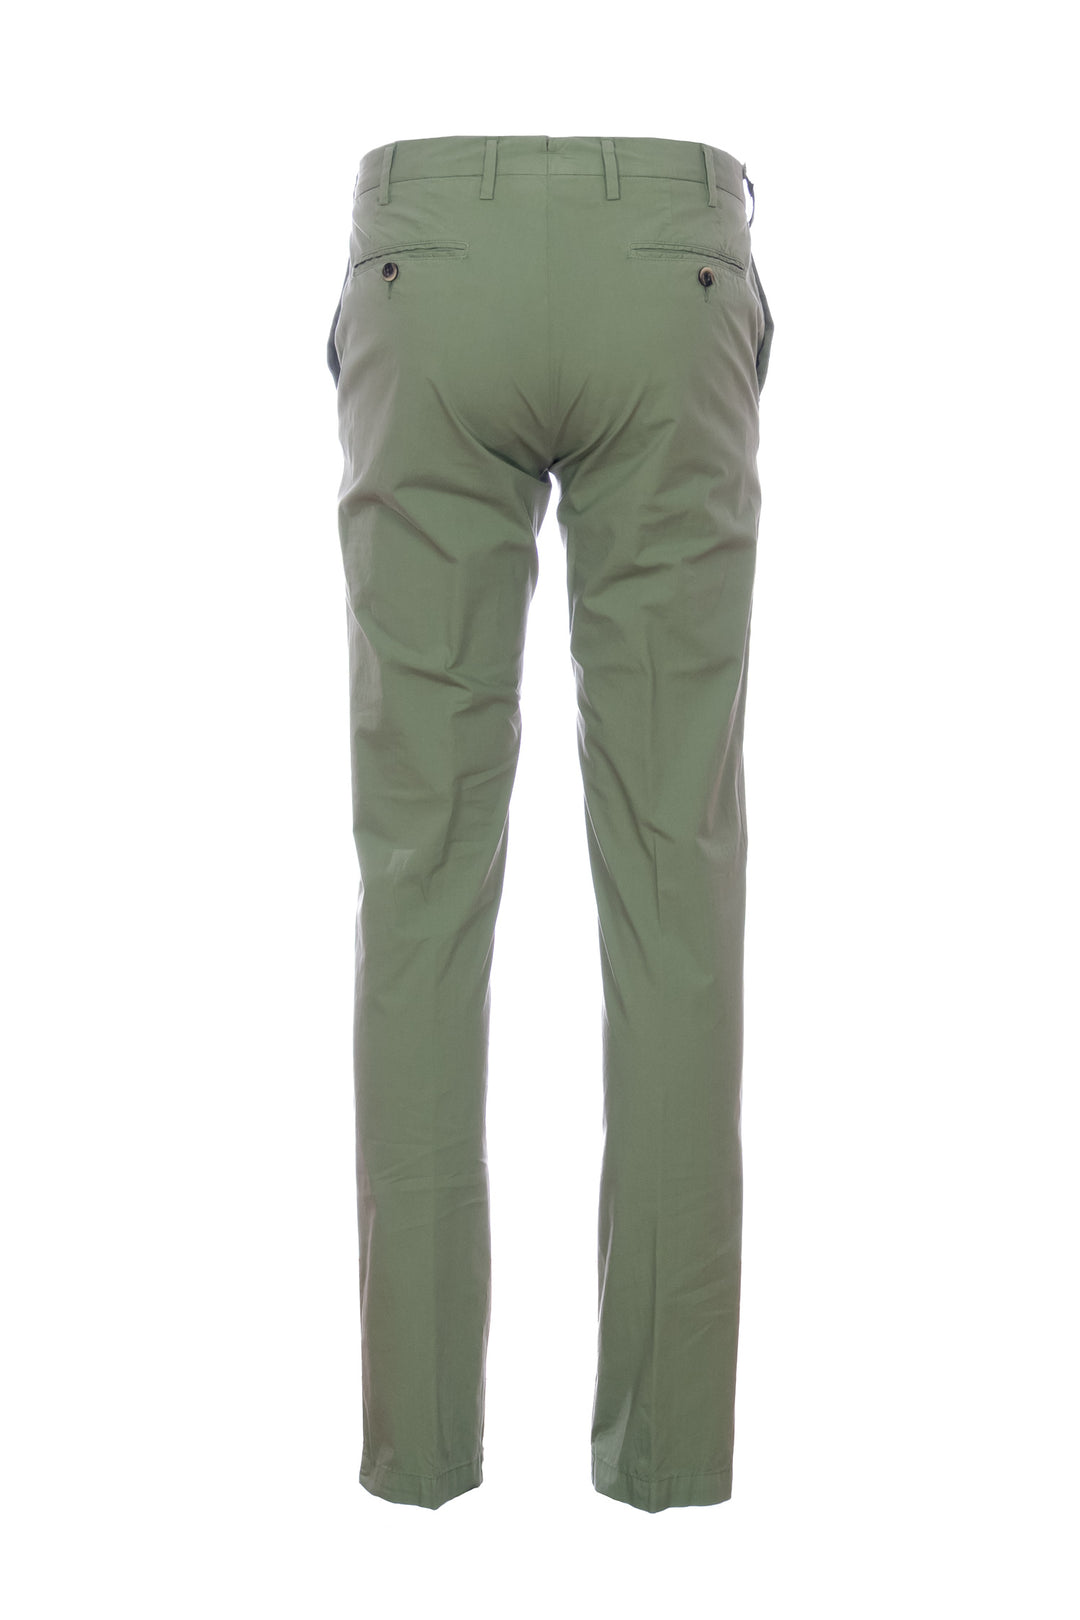 Germano Pantalone verde militare in cotone stretch - Mancinelli 1954